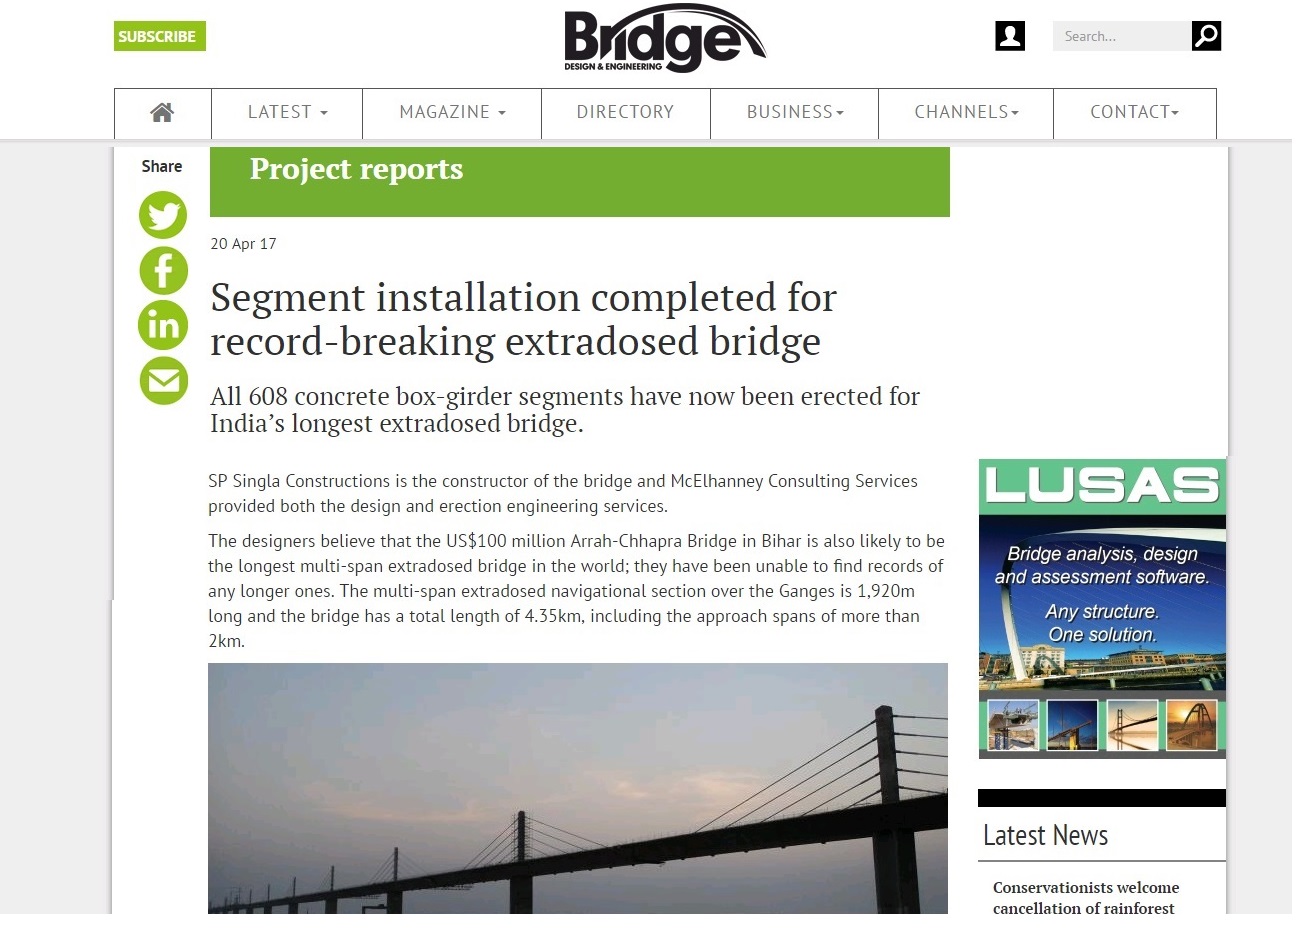 India's longest Extradosed Bridge built between Ara-Chhapra in Bihar State